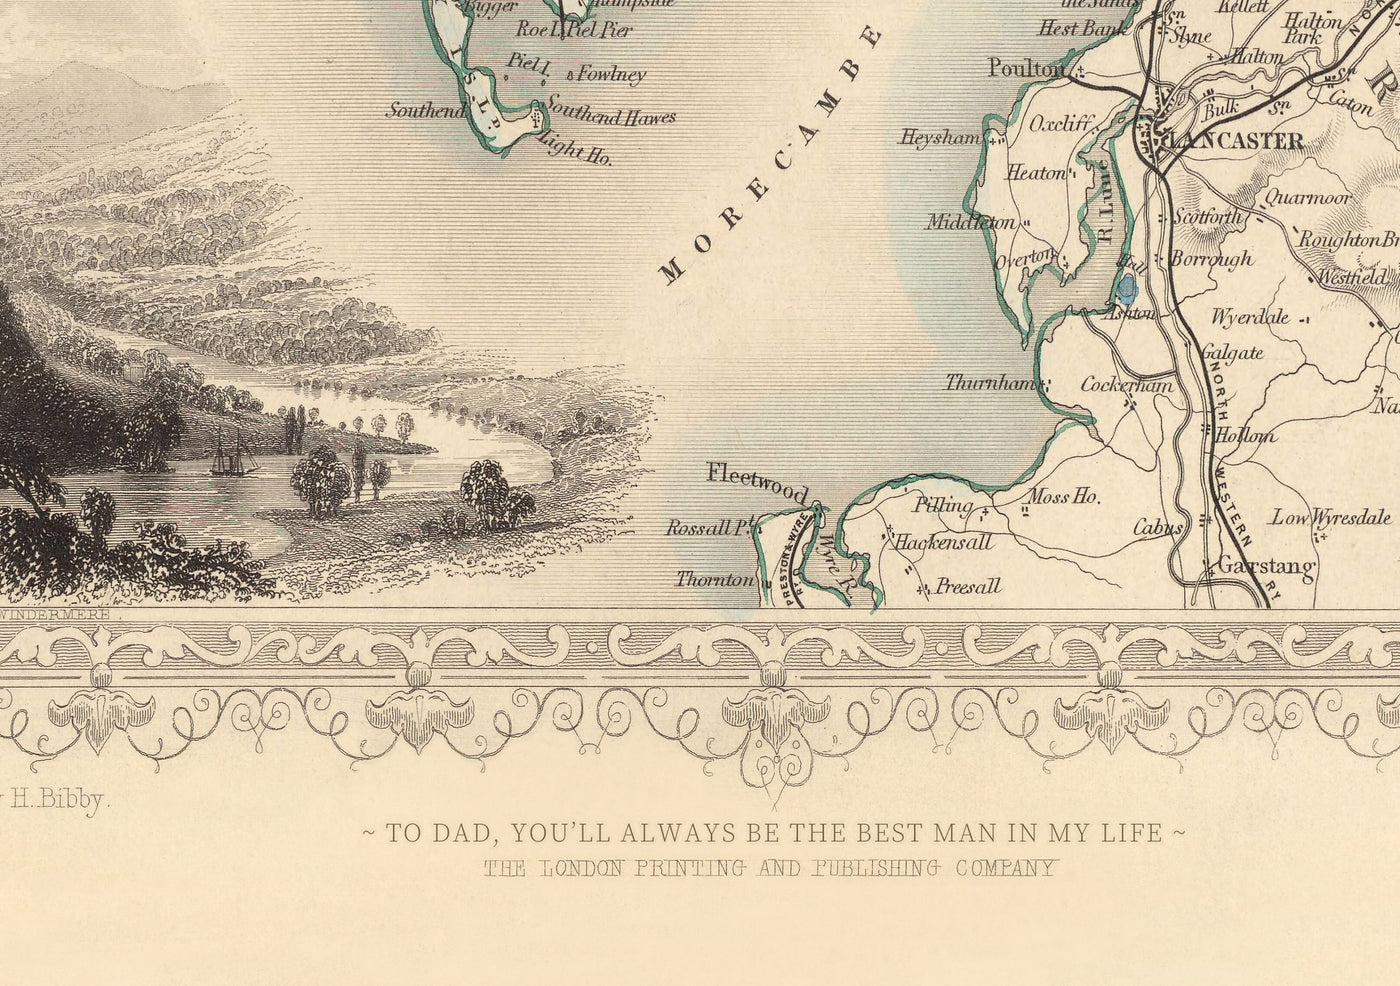 Alte Karte der Bronx im Jahr 1900 von Hyde and Co. - New York City, Pelham Bay Park, Hunter Island, Botanischer Garten, Harlem River